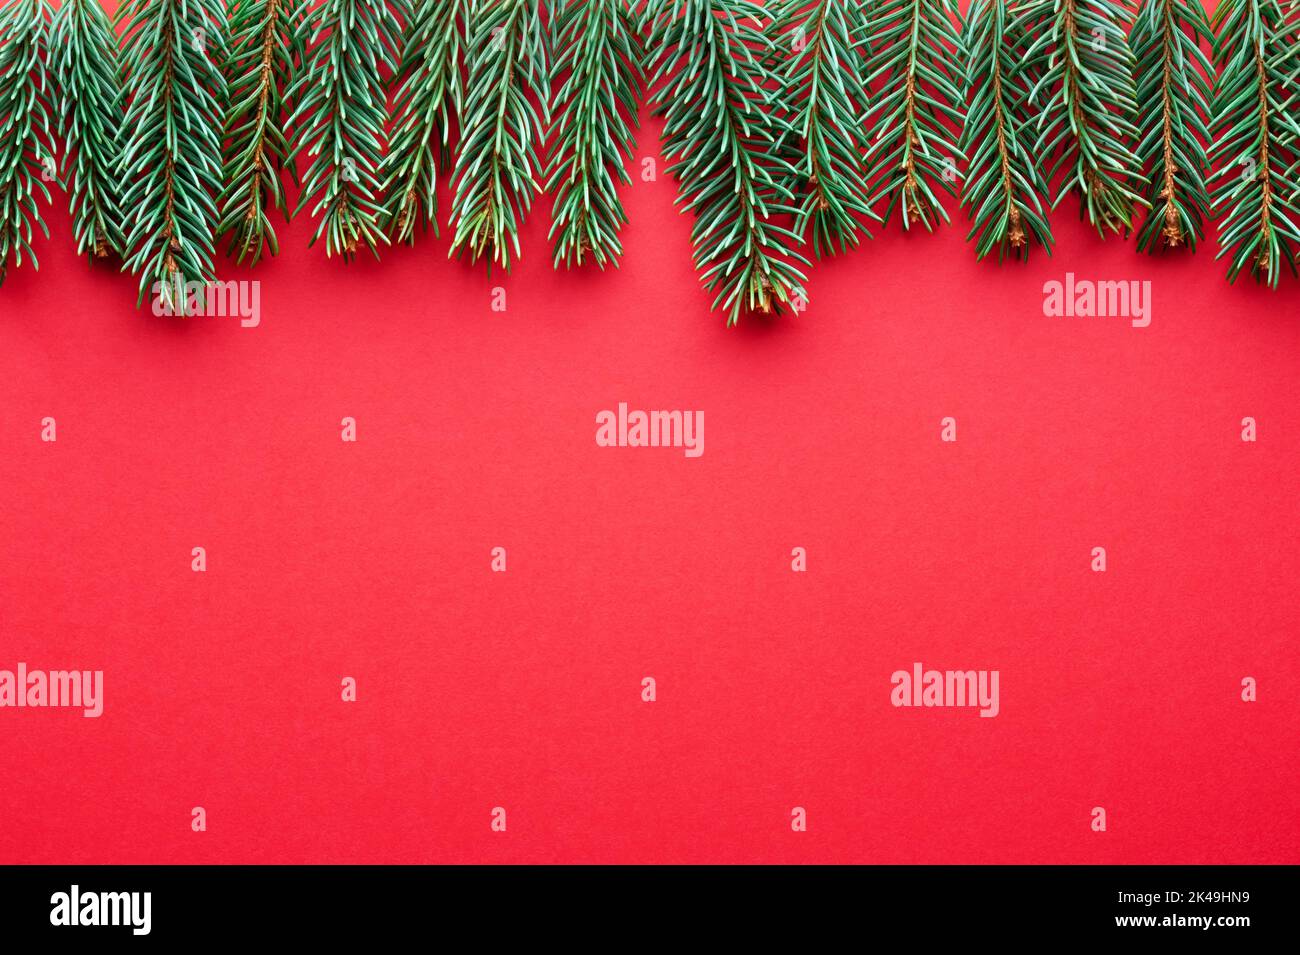 Arrière-plan créatif des fêtes de Noël avec brindilles de sapin sur fond de papier en carton rouge. Flat lay, vue de dessus, espace de copie Banque D'Images